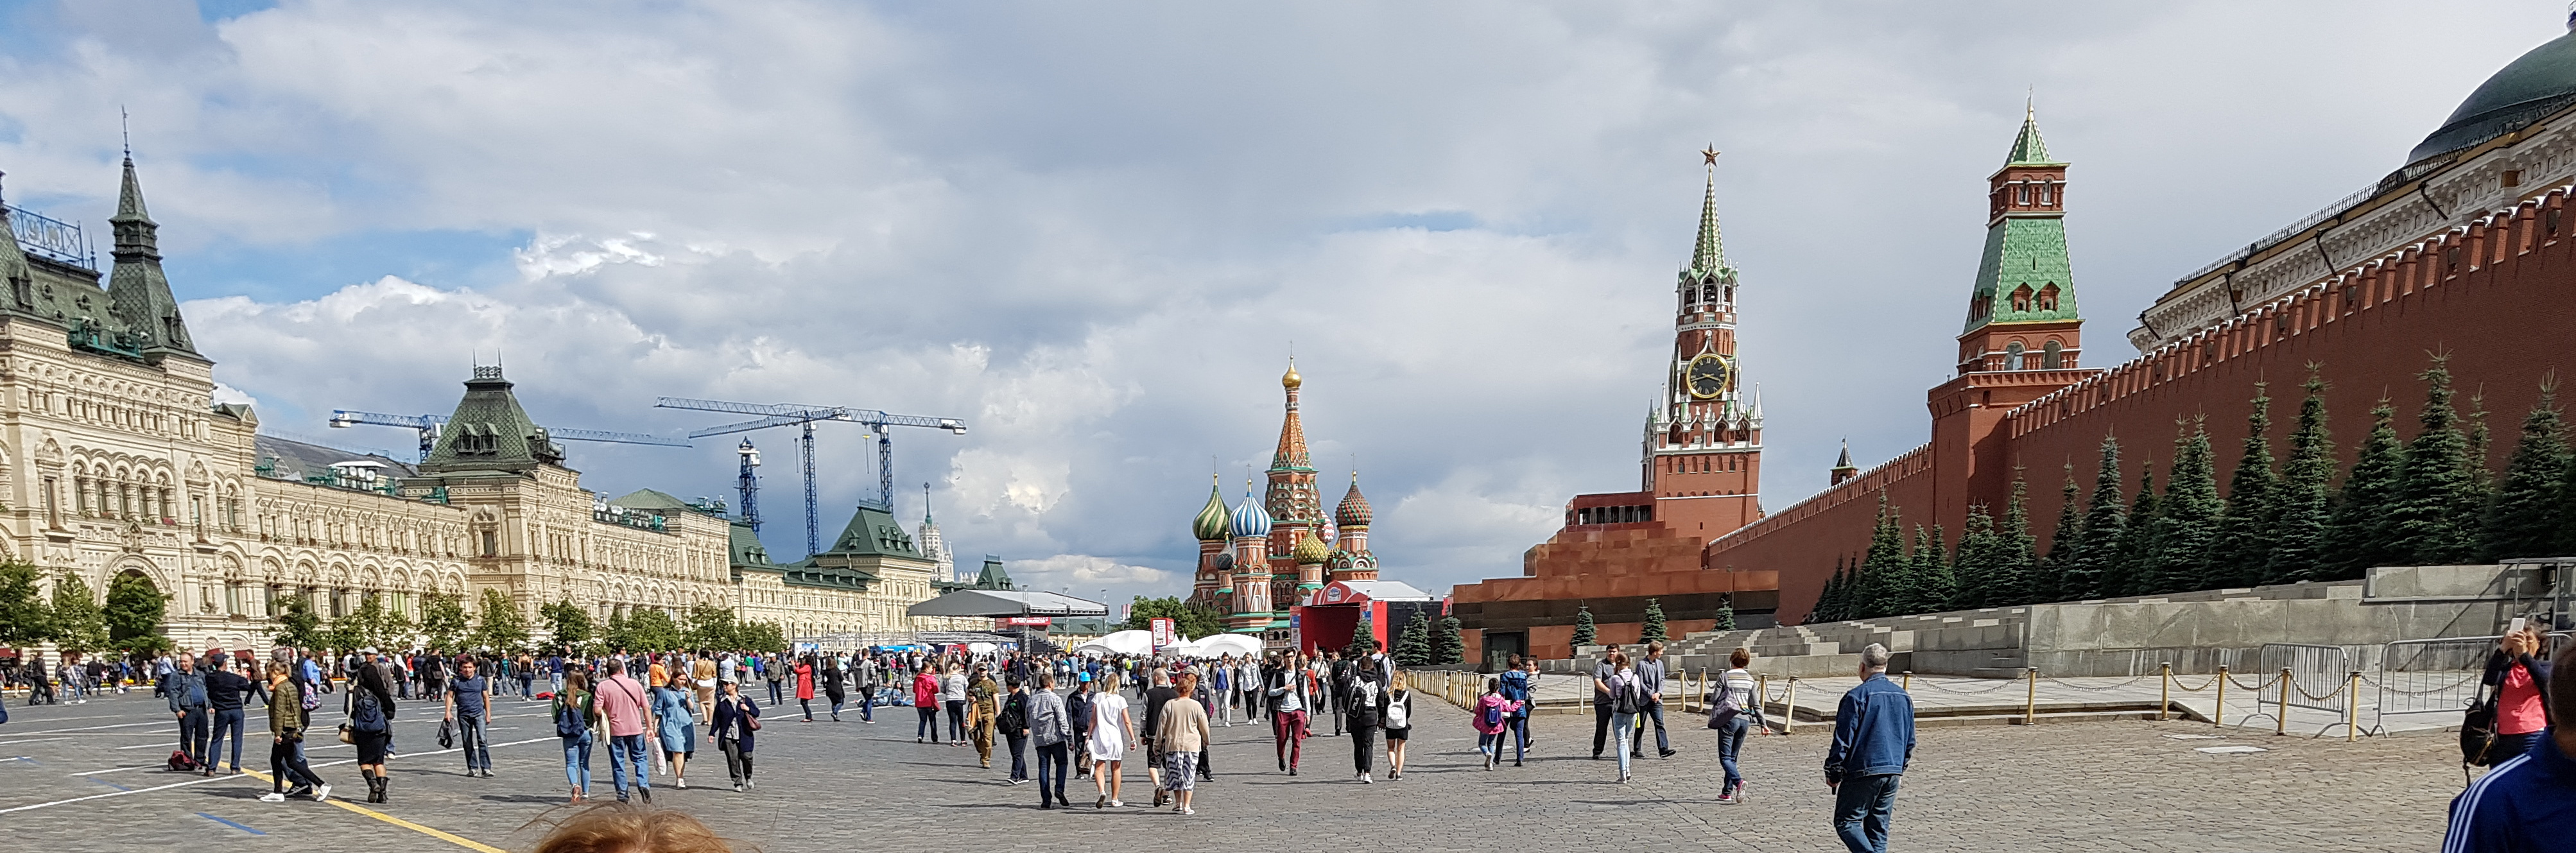 20170706-154251-Moscow-Kreml-Red_Square-SR-2.jpg